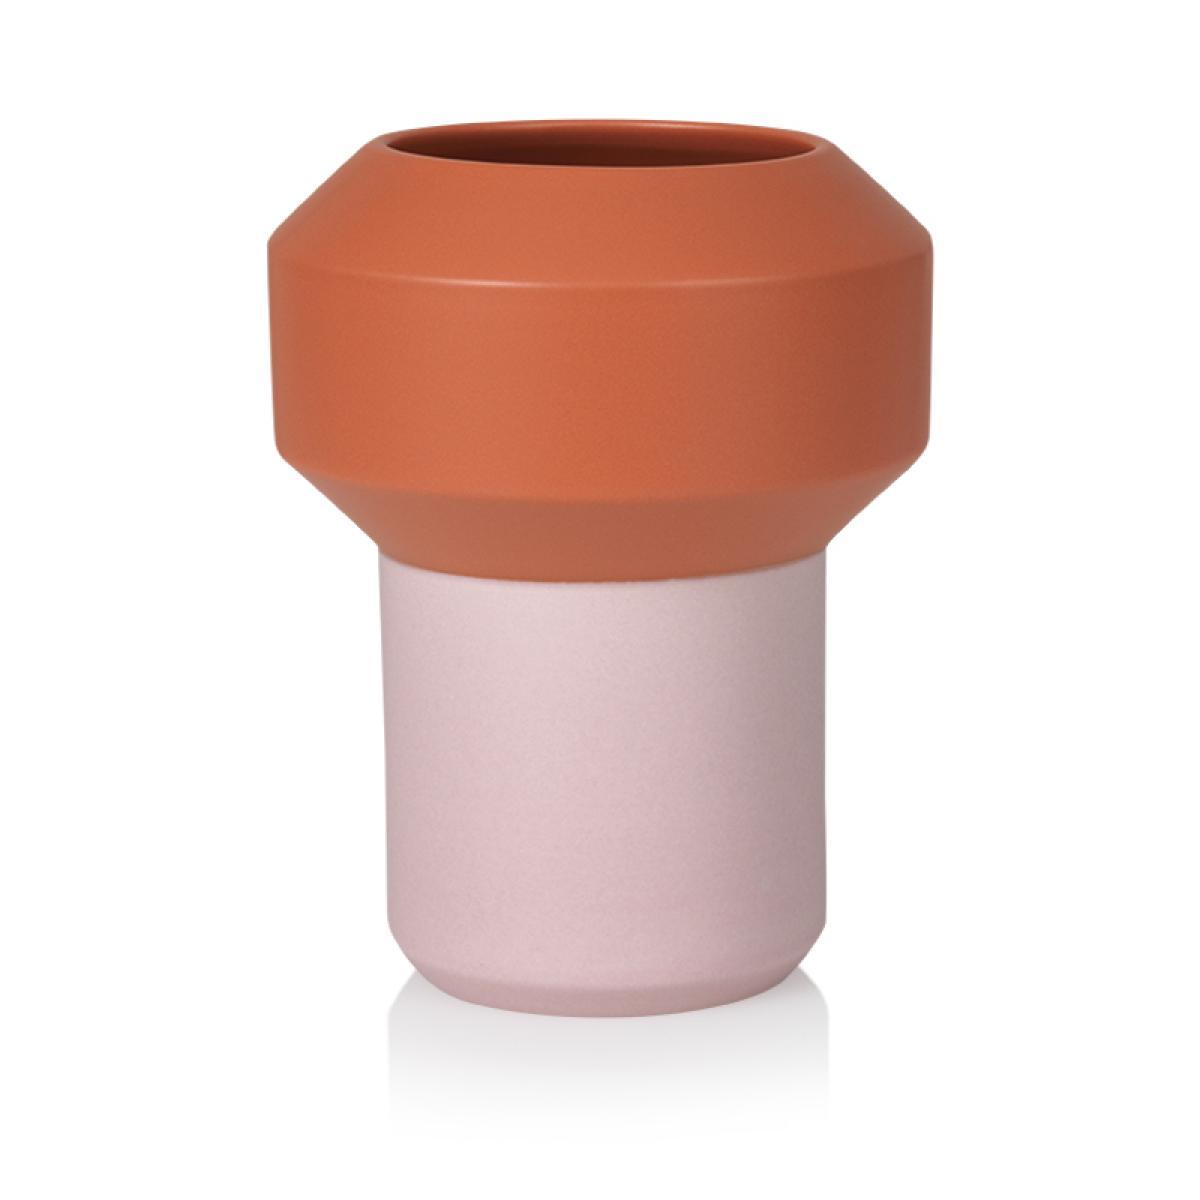 Lucie Kaas Fumario Vase Orange/Pink, 20,5 cm